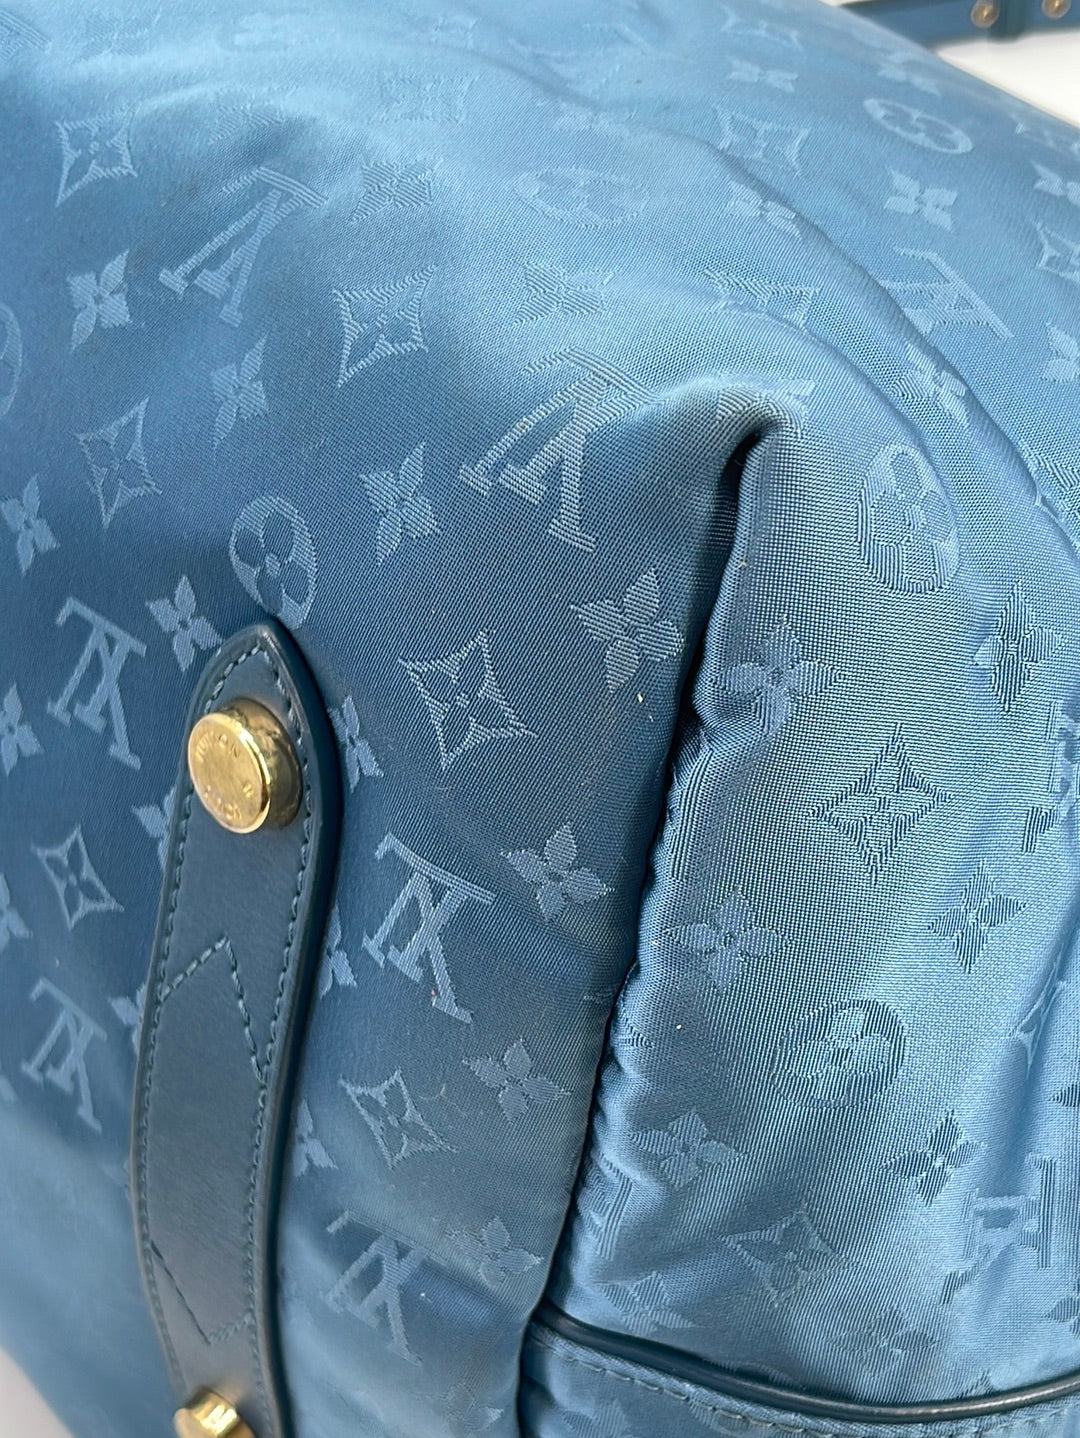 Preloved Louis Vuitton Monogram Canvas Nouvelle Vague Handbag FO0122 051123 $200 OFF